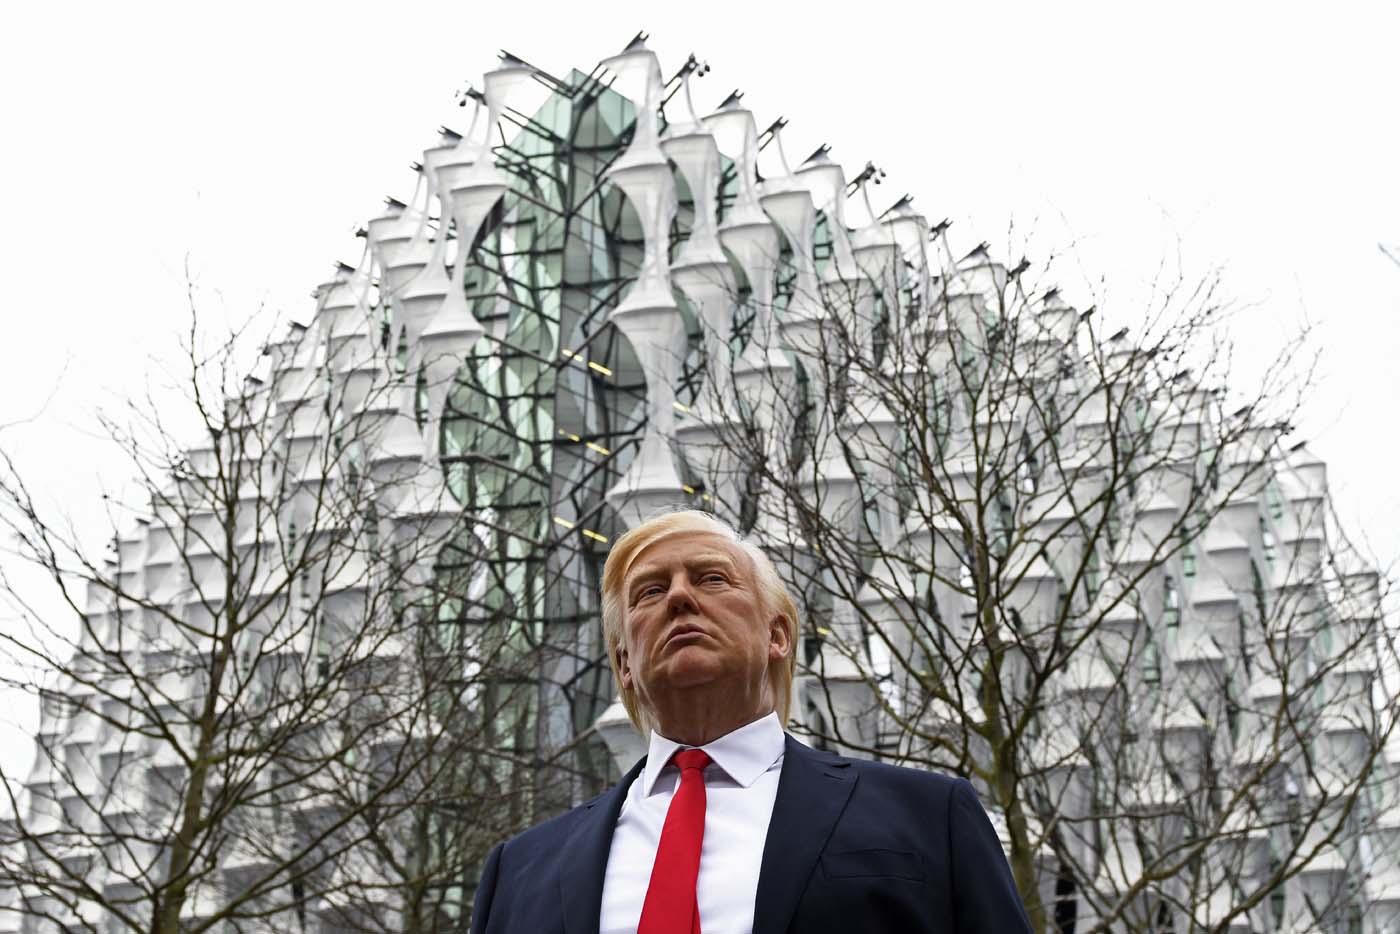 Donald Trump de cera aparece frente a la embajada de EEUU en Londres (fotos)